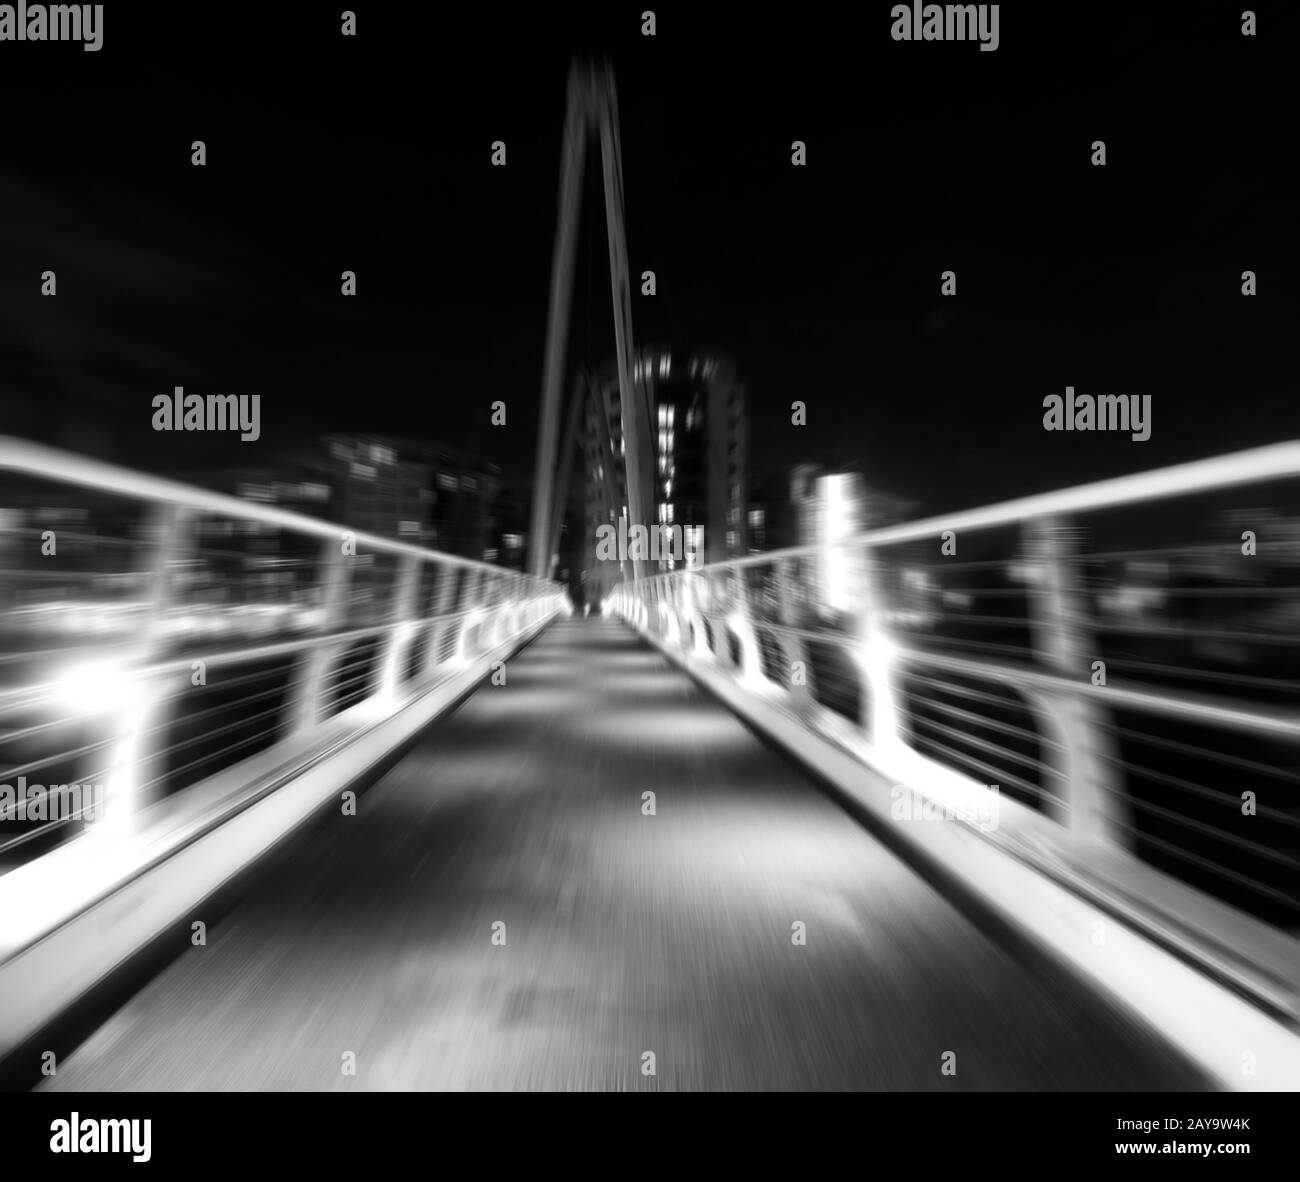 zoom monocromatico sfocare l'immagine di un ponte pedonale in un ambiente urbano di notte Foto Stock